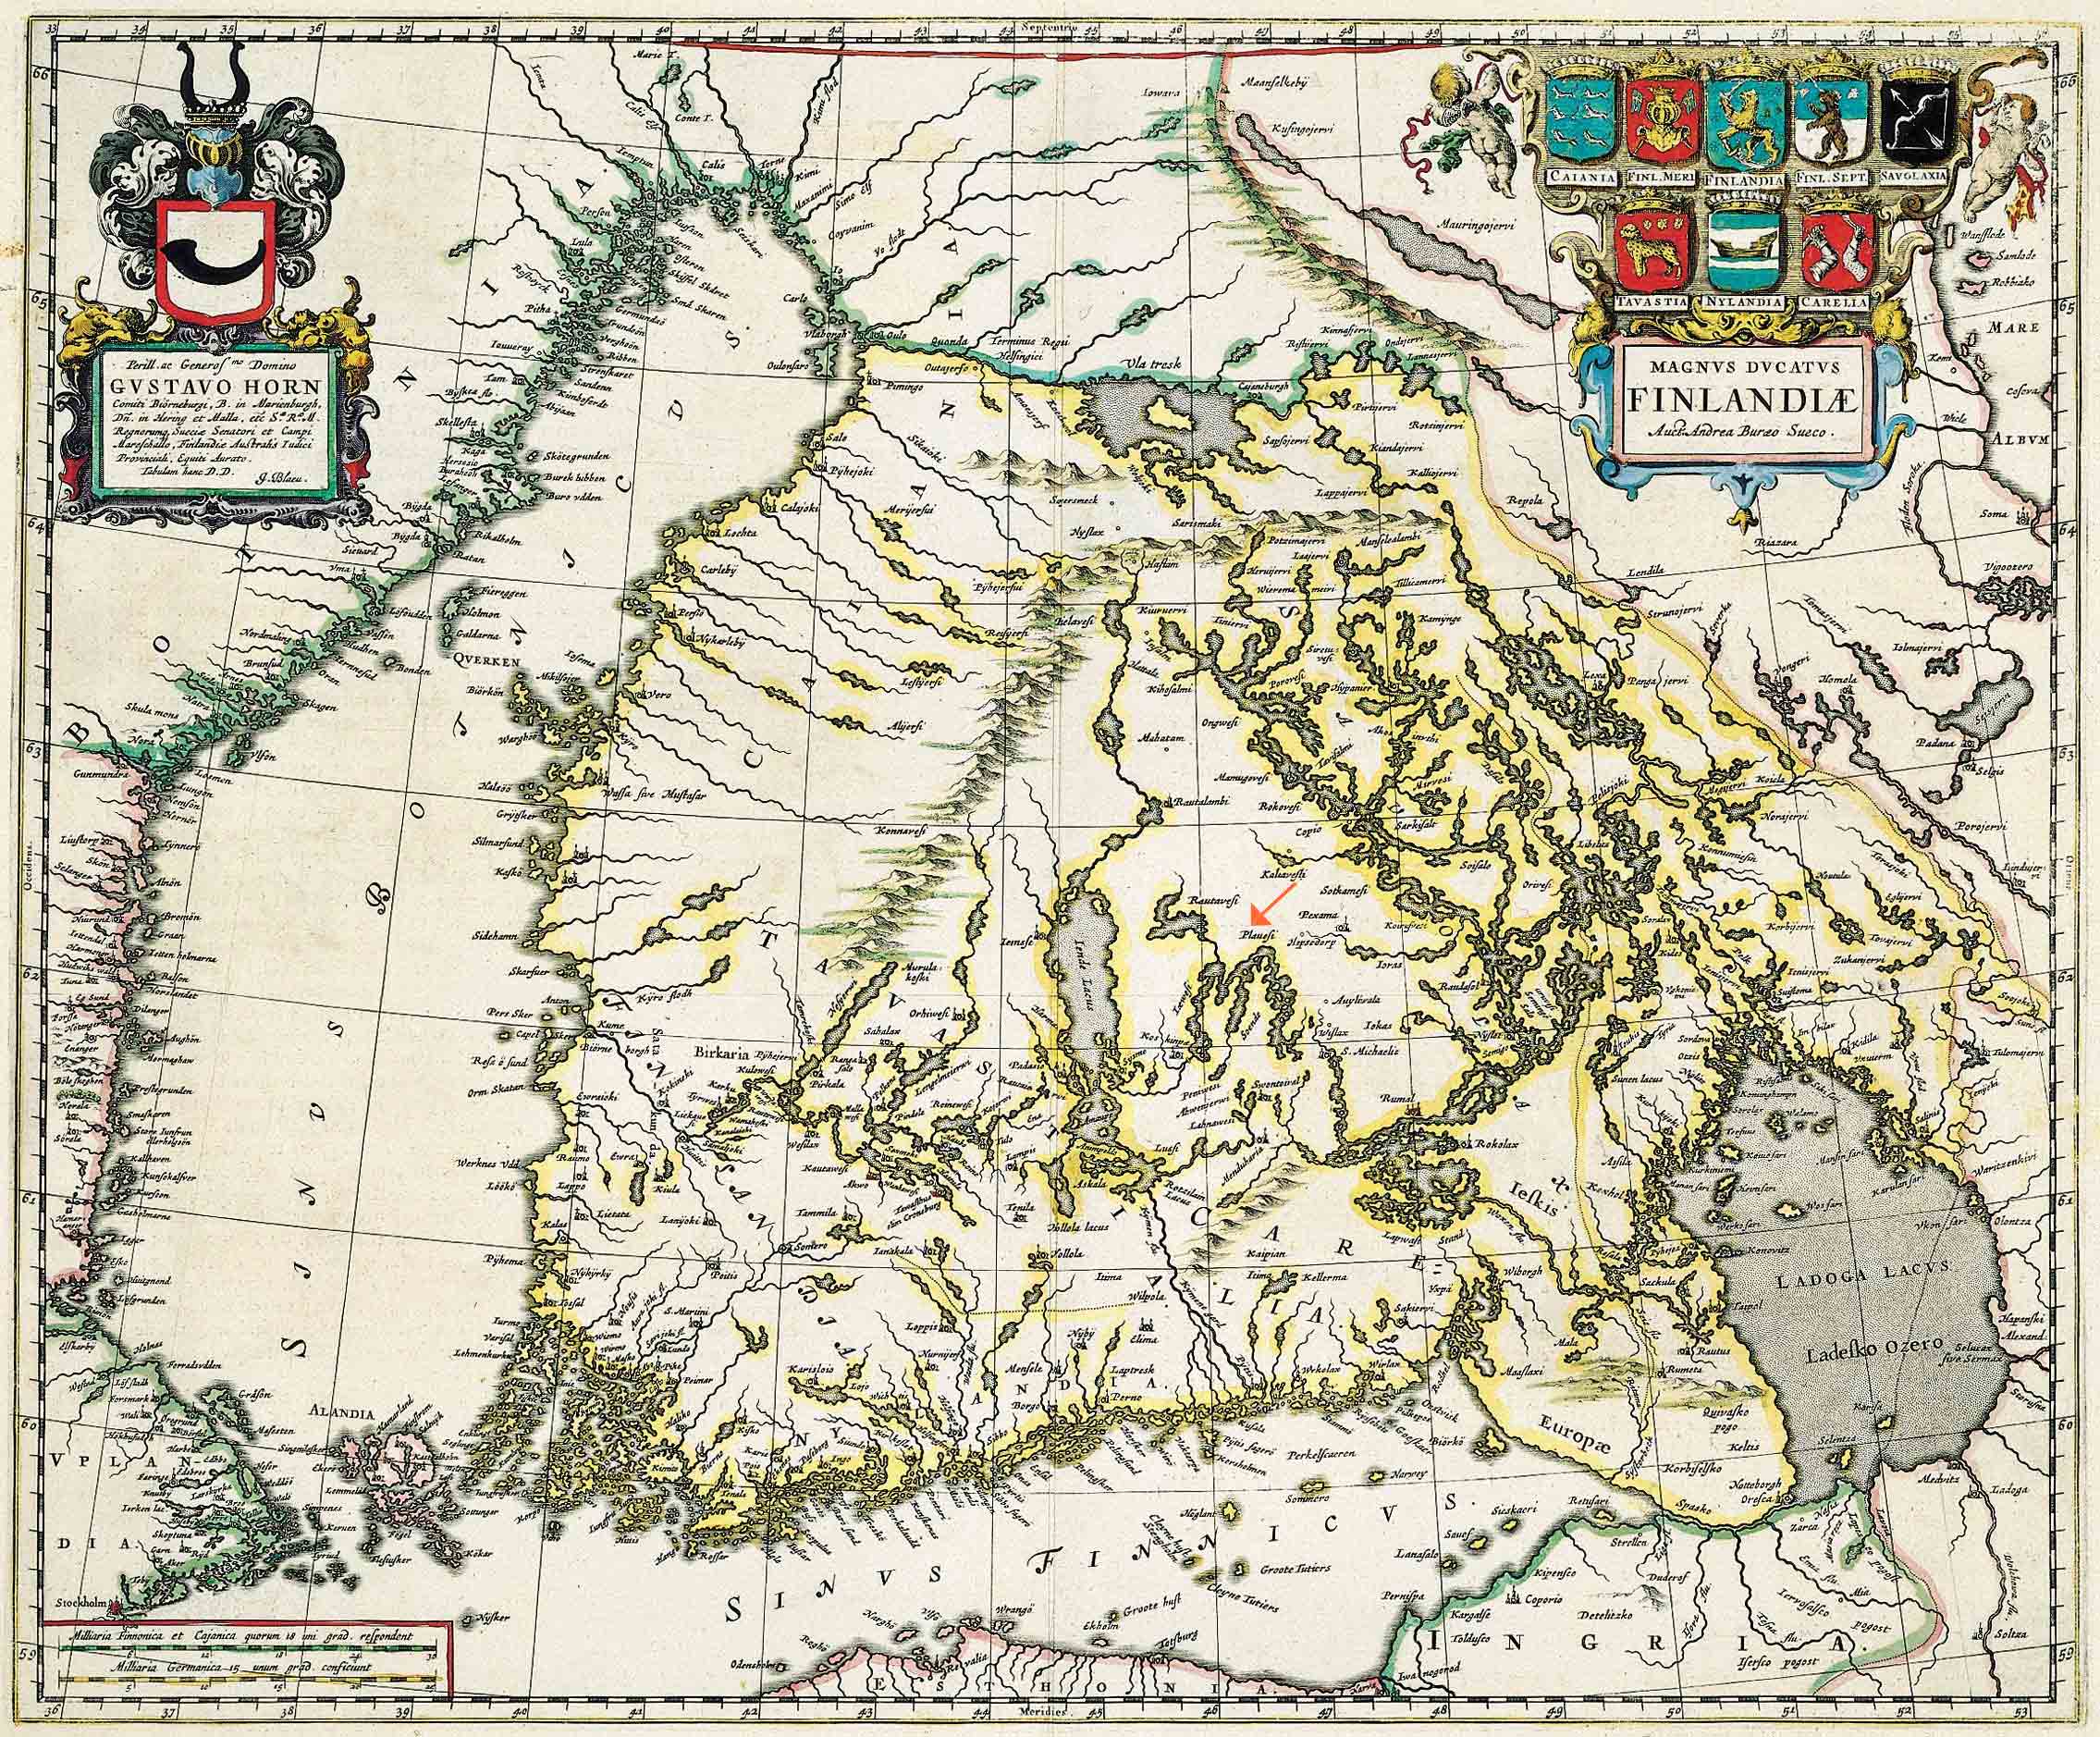 Magnus Ducatus Finlandiae 1662 - Johann Blaeu, Atlas Maior